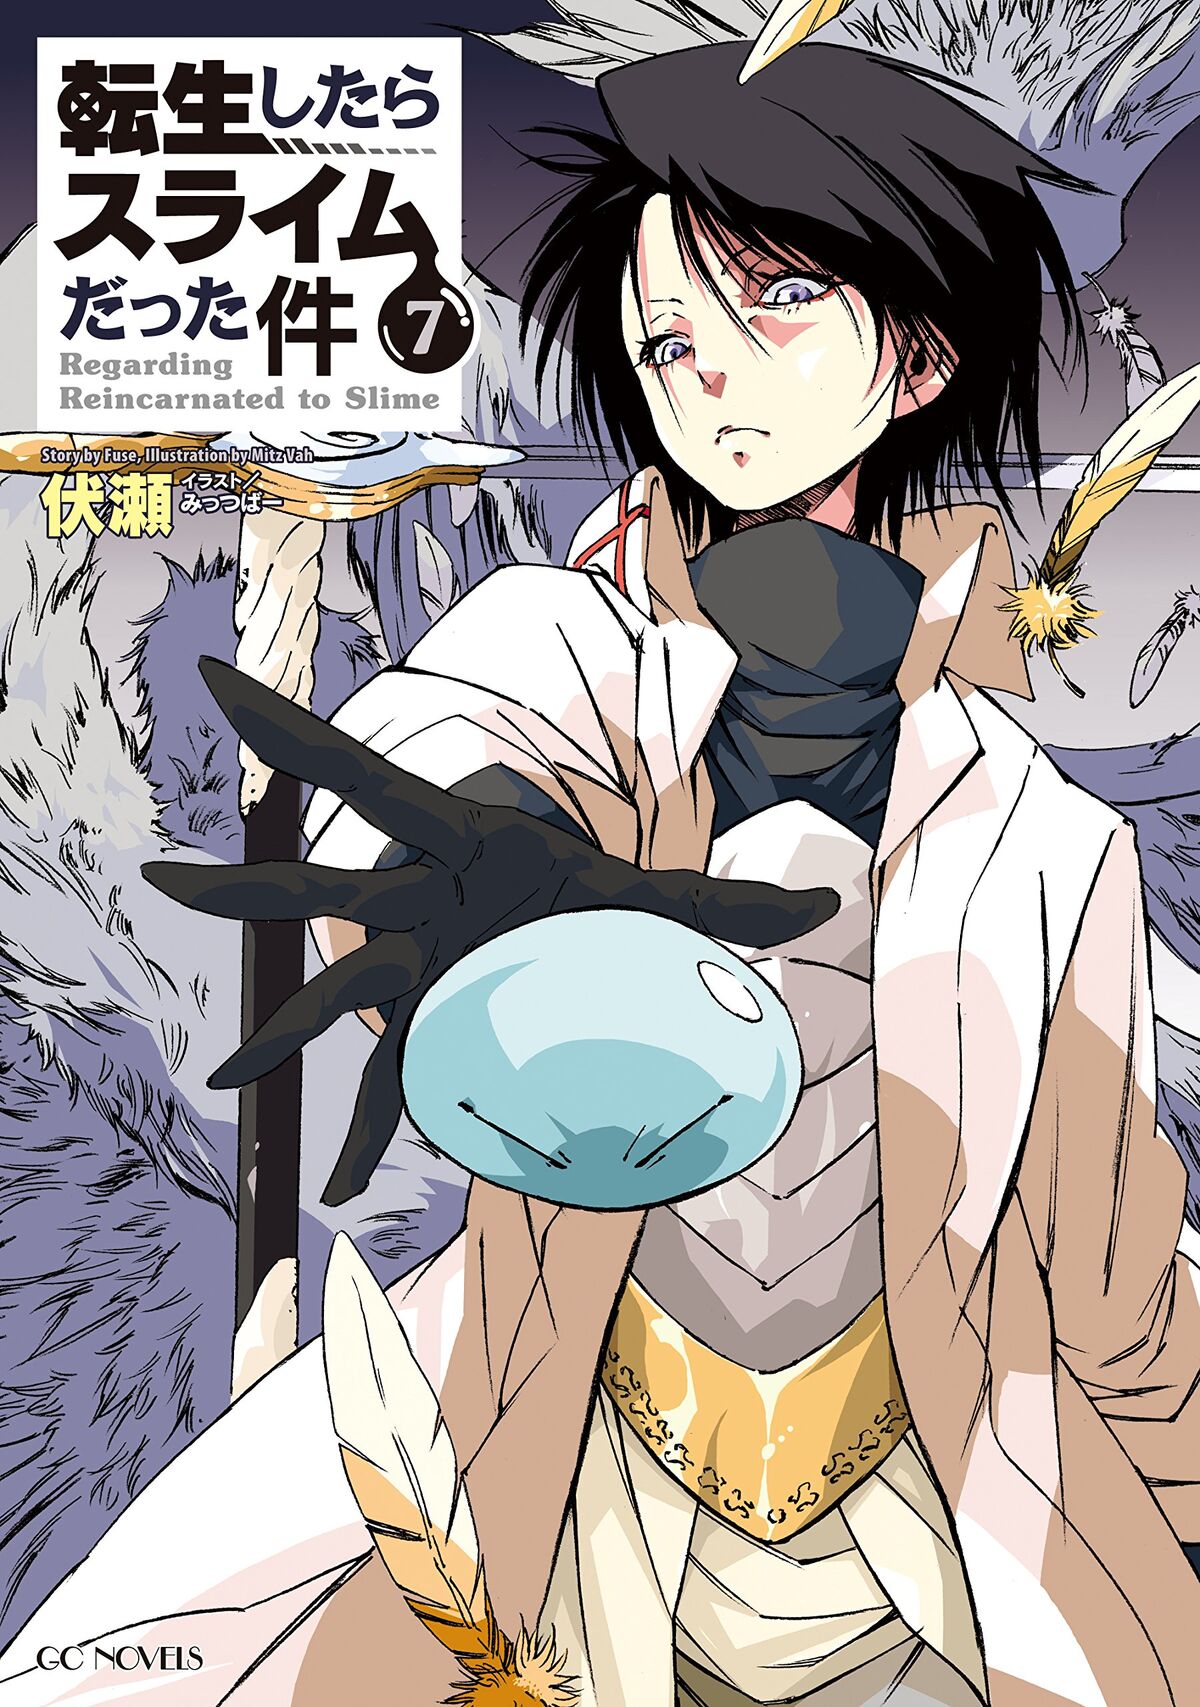 Manga Volume 2, Tensei Shitara Slime Datta Ken Wiki